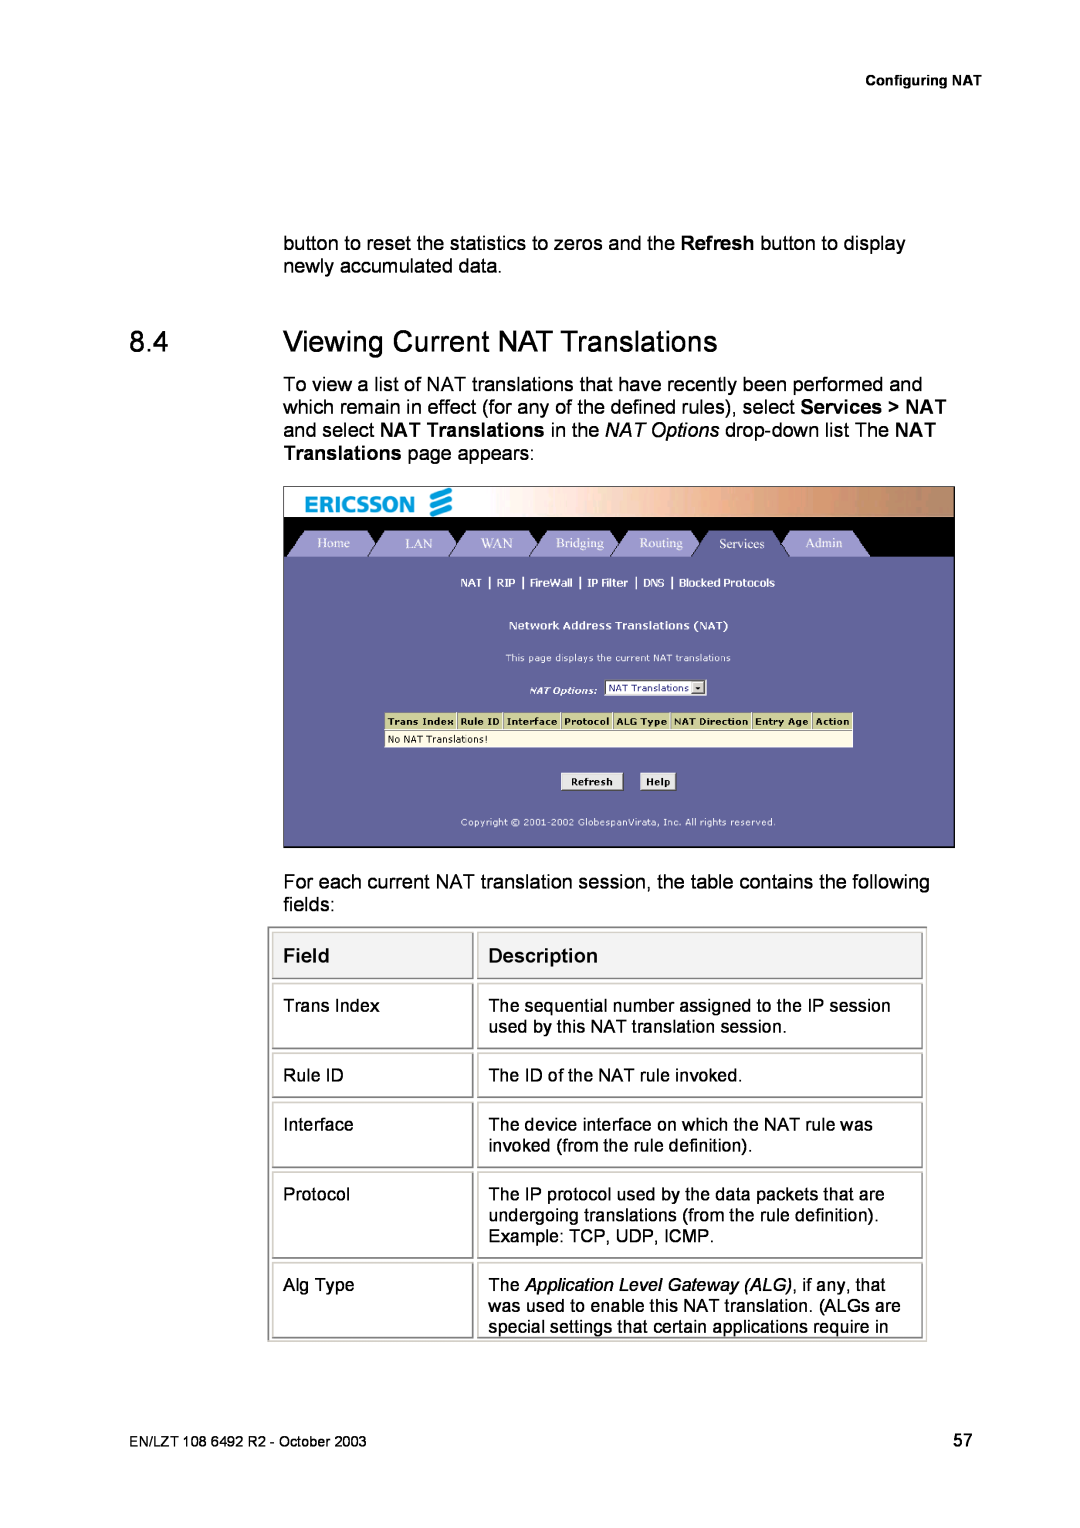 Garmin HM210DP/DI manual Viewing Current NAT Translations, Field, Description 